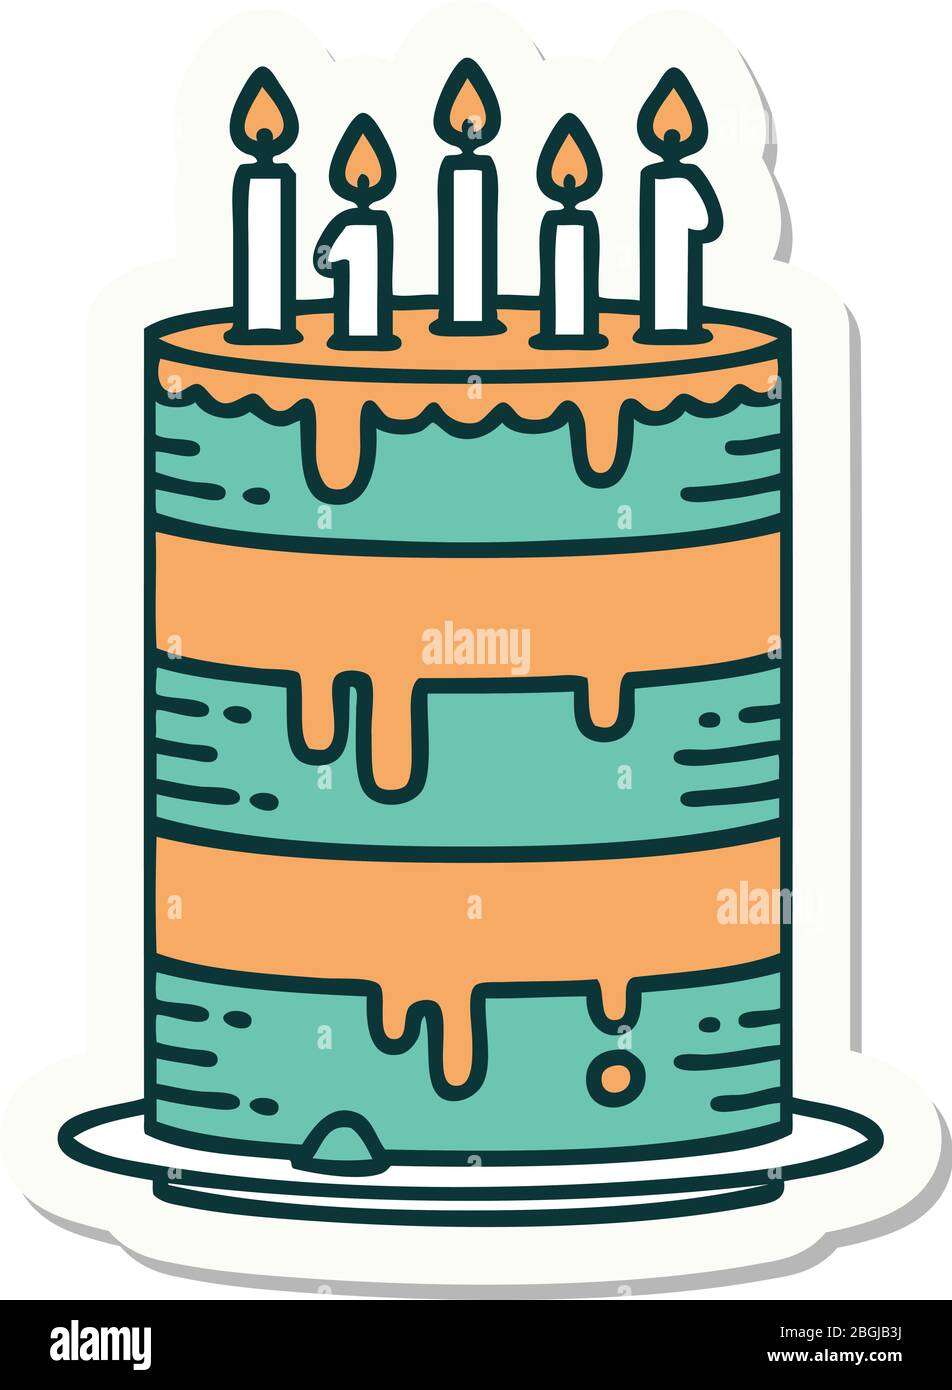 Adesivo Torta di compleanno